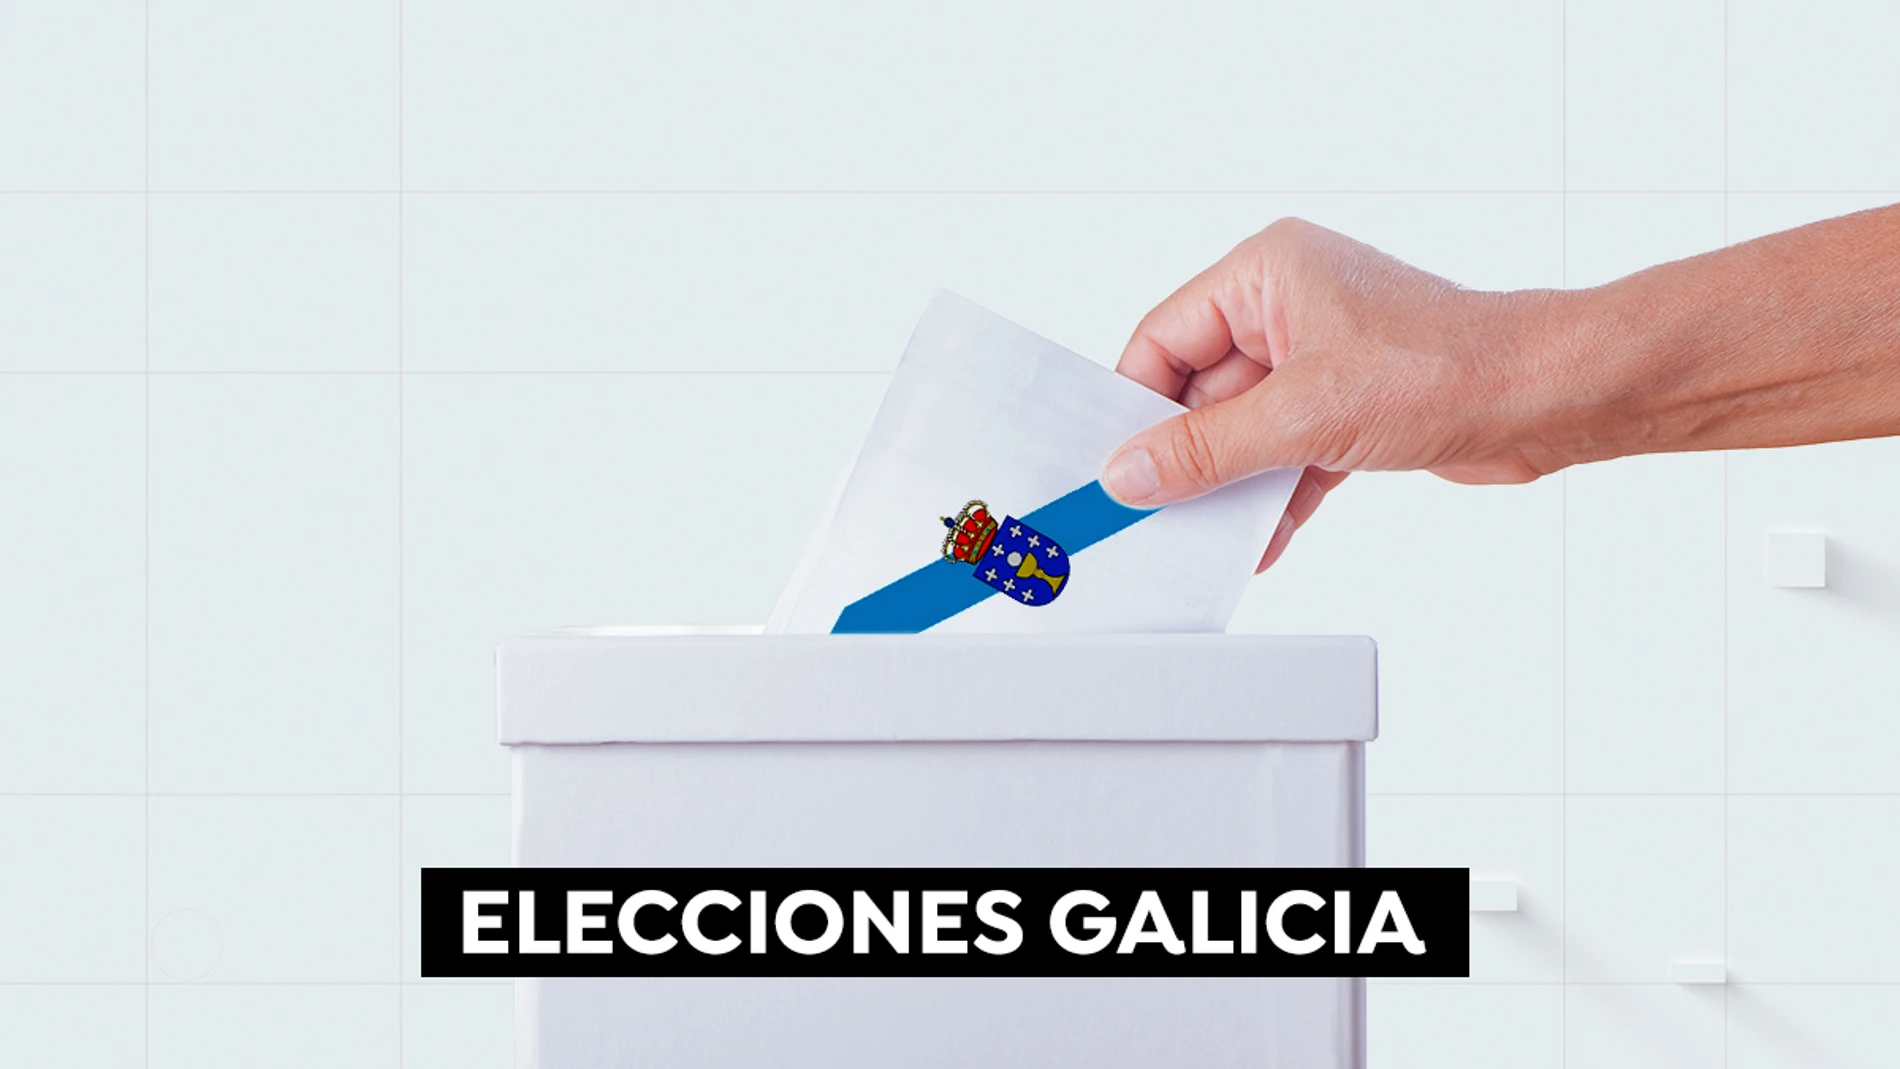 Elecciones en Galicia: sondeos a pie de urna